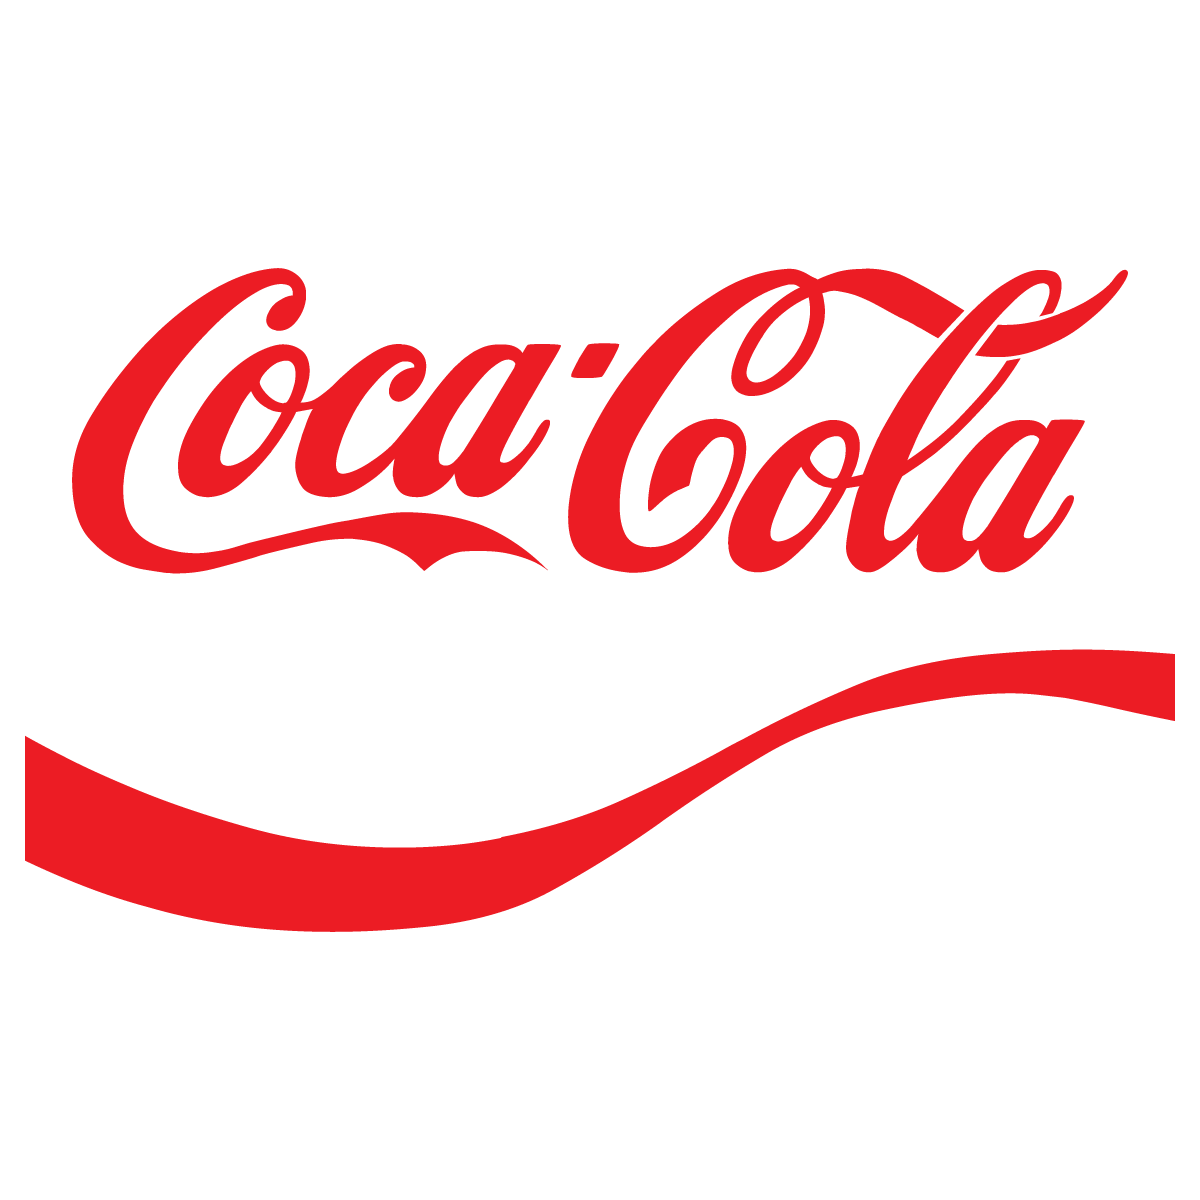 coca-cola-zero-soft-drink-coca-cola-logo-png-download-2736-2736